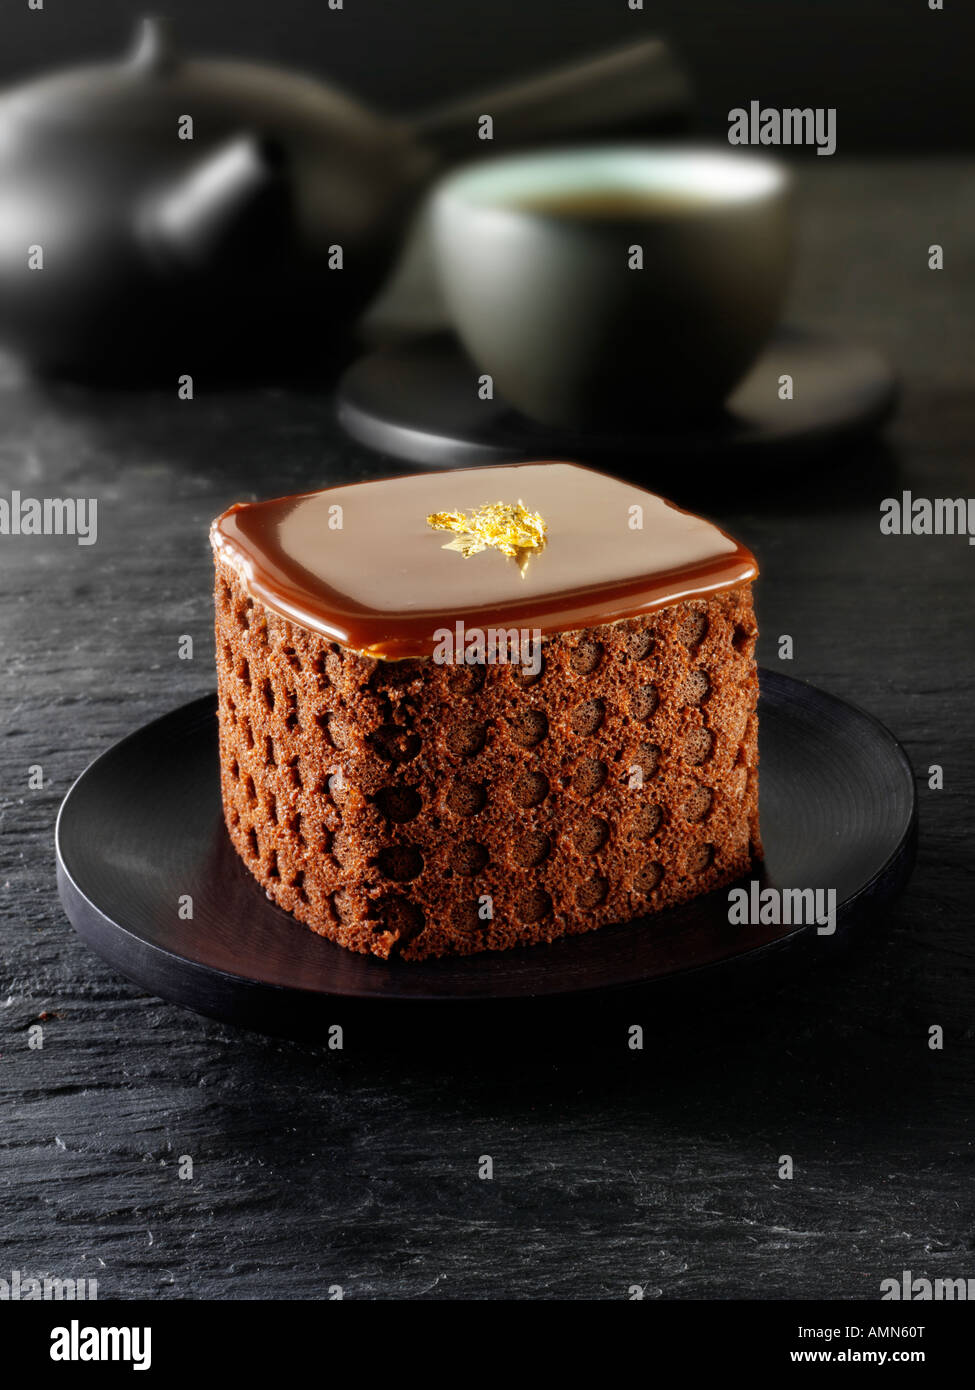 Una specialità di pasticceria fatta a mano ricca torta di cioccolato indulgente ripiena di caffè in un tavolo nero Foto Stock